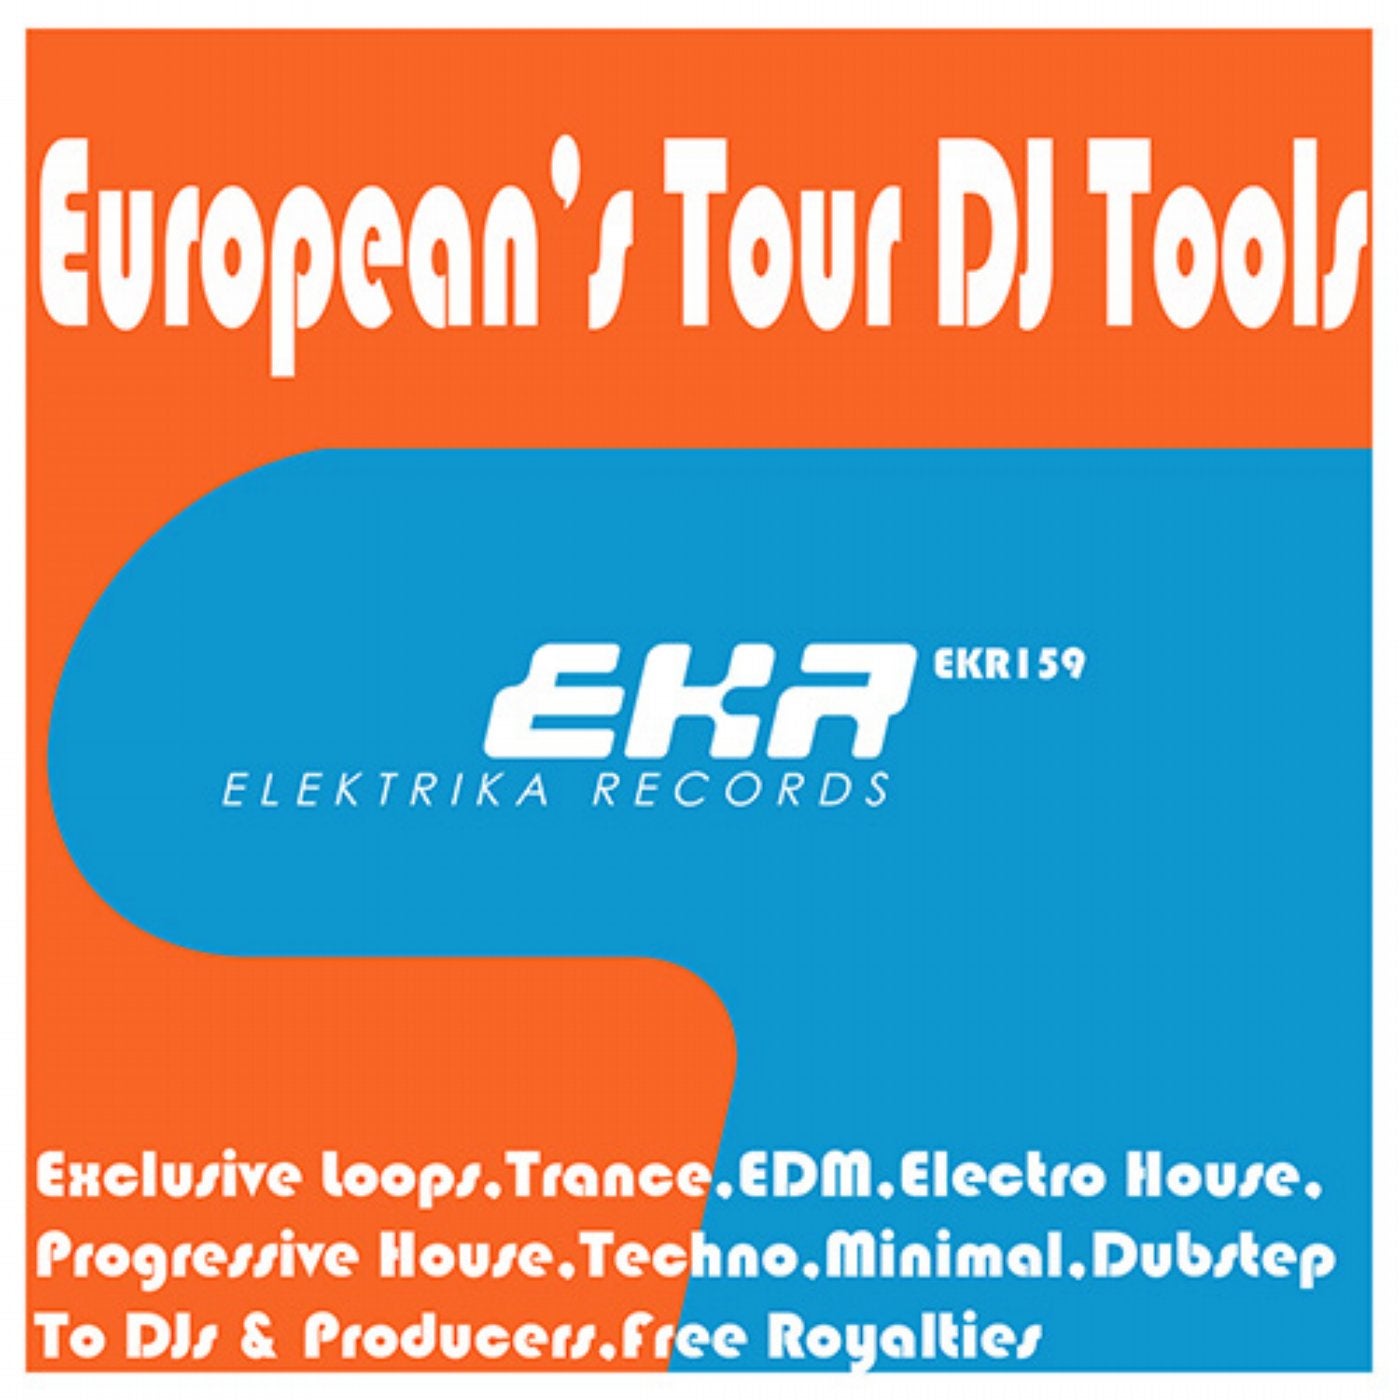 European's Tour DJ Tools